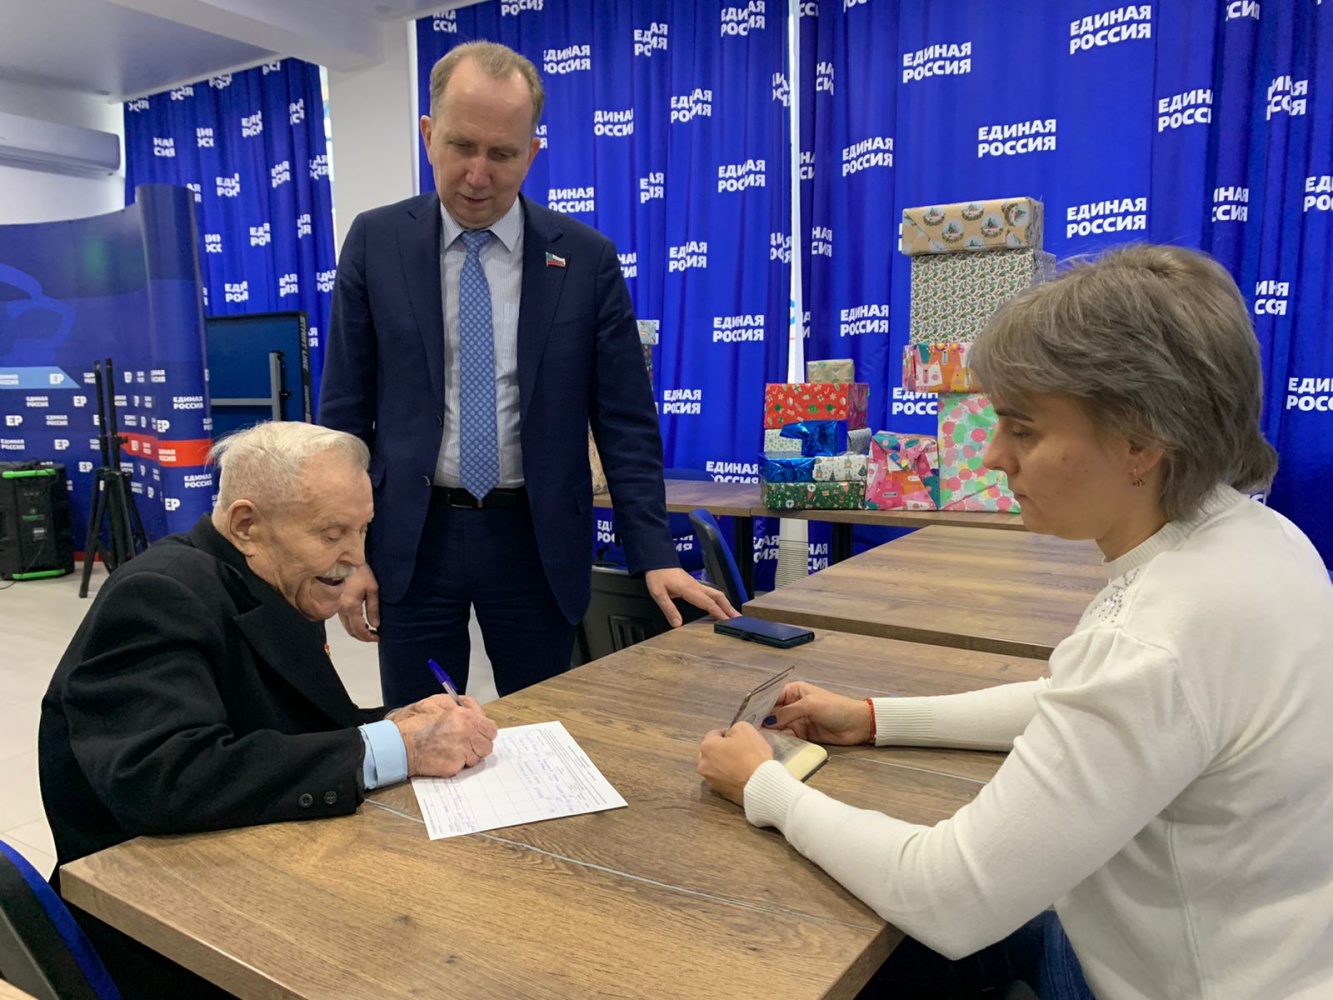 97-летний ветеран войны пришел в астраханский штаб, чтобы поставить подпись в поддержку Путина